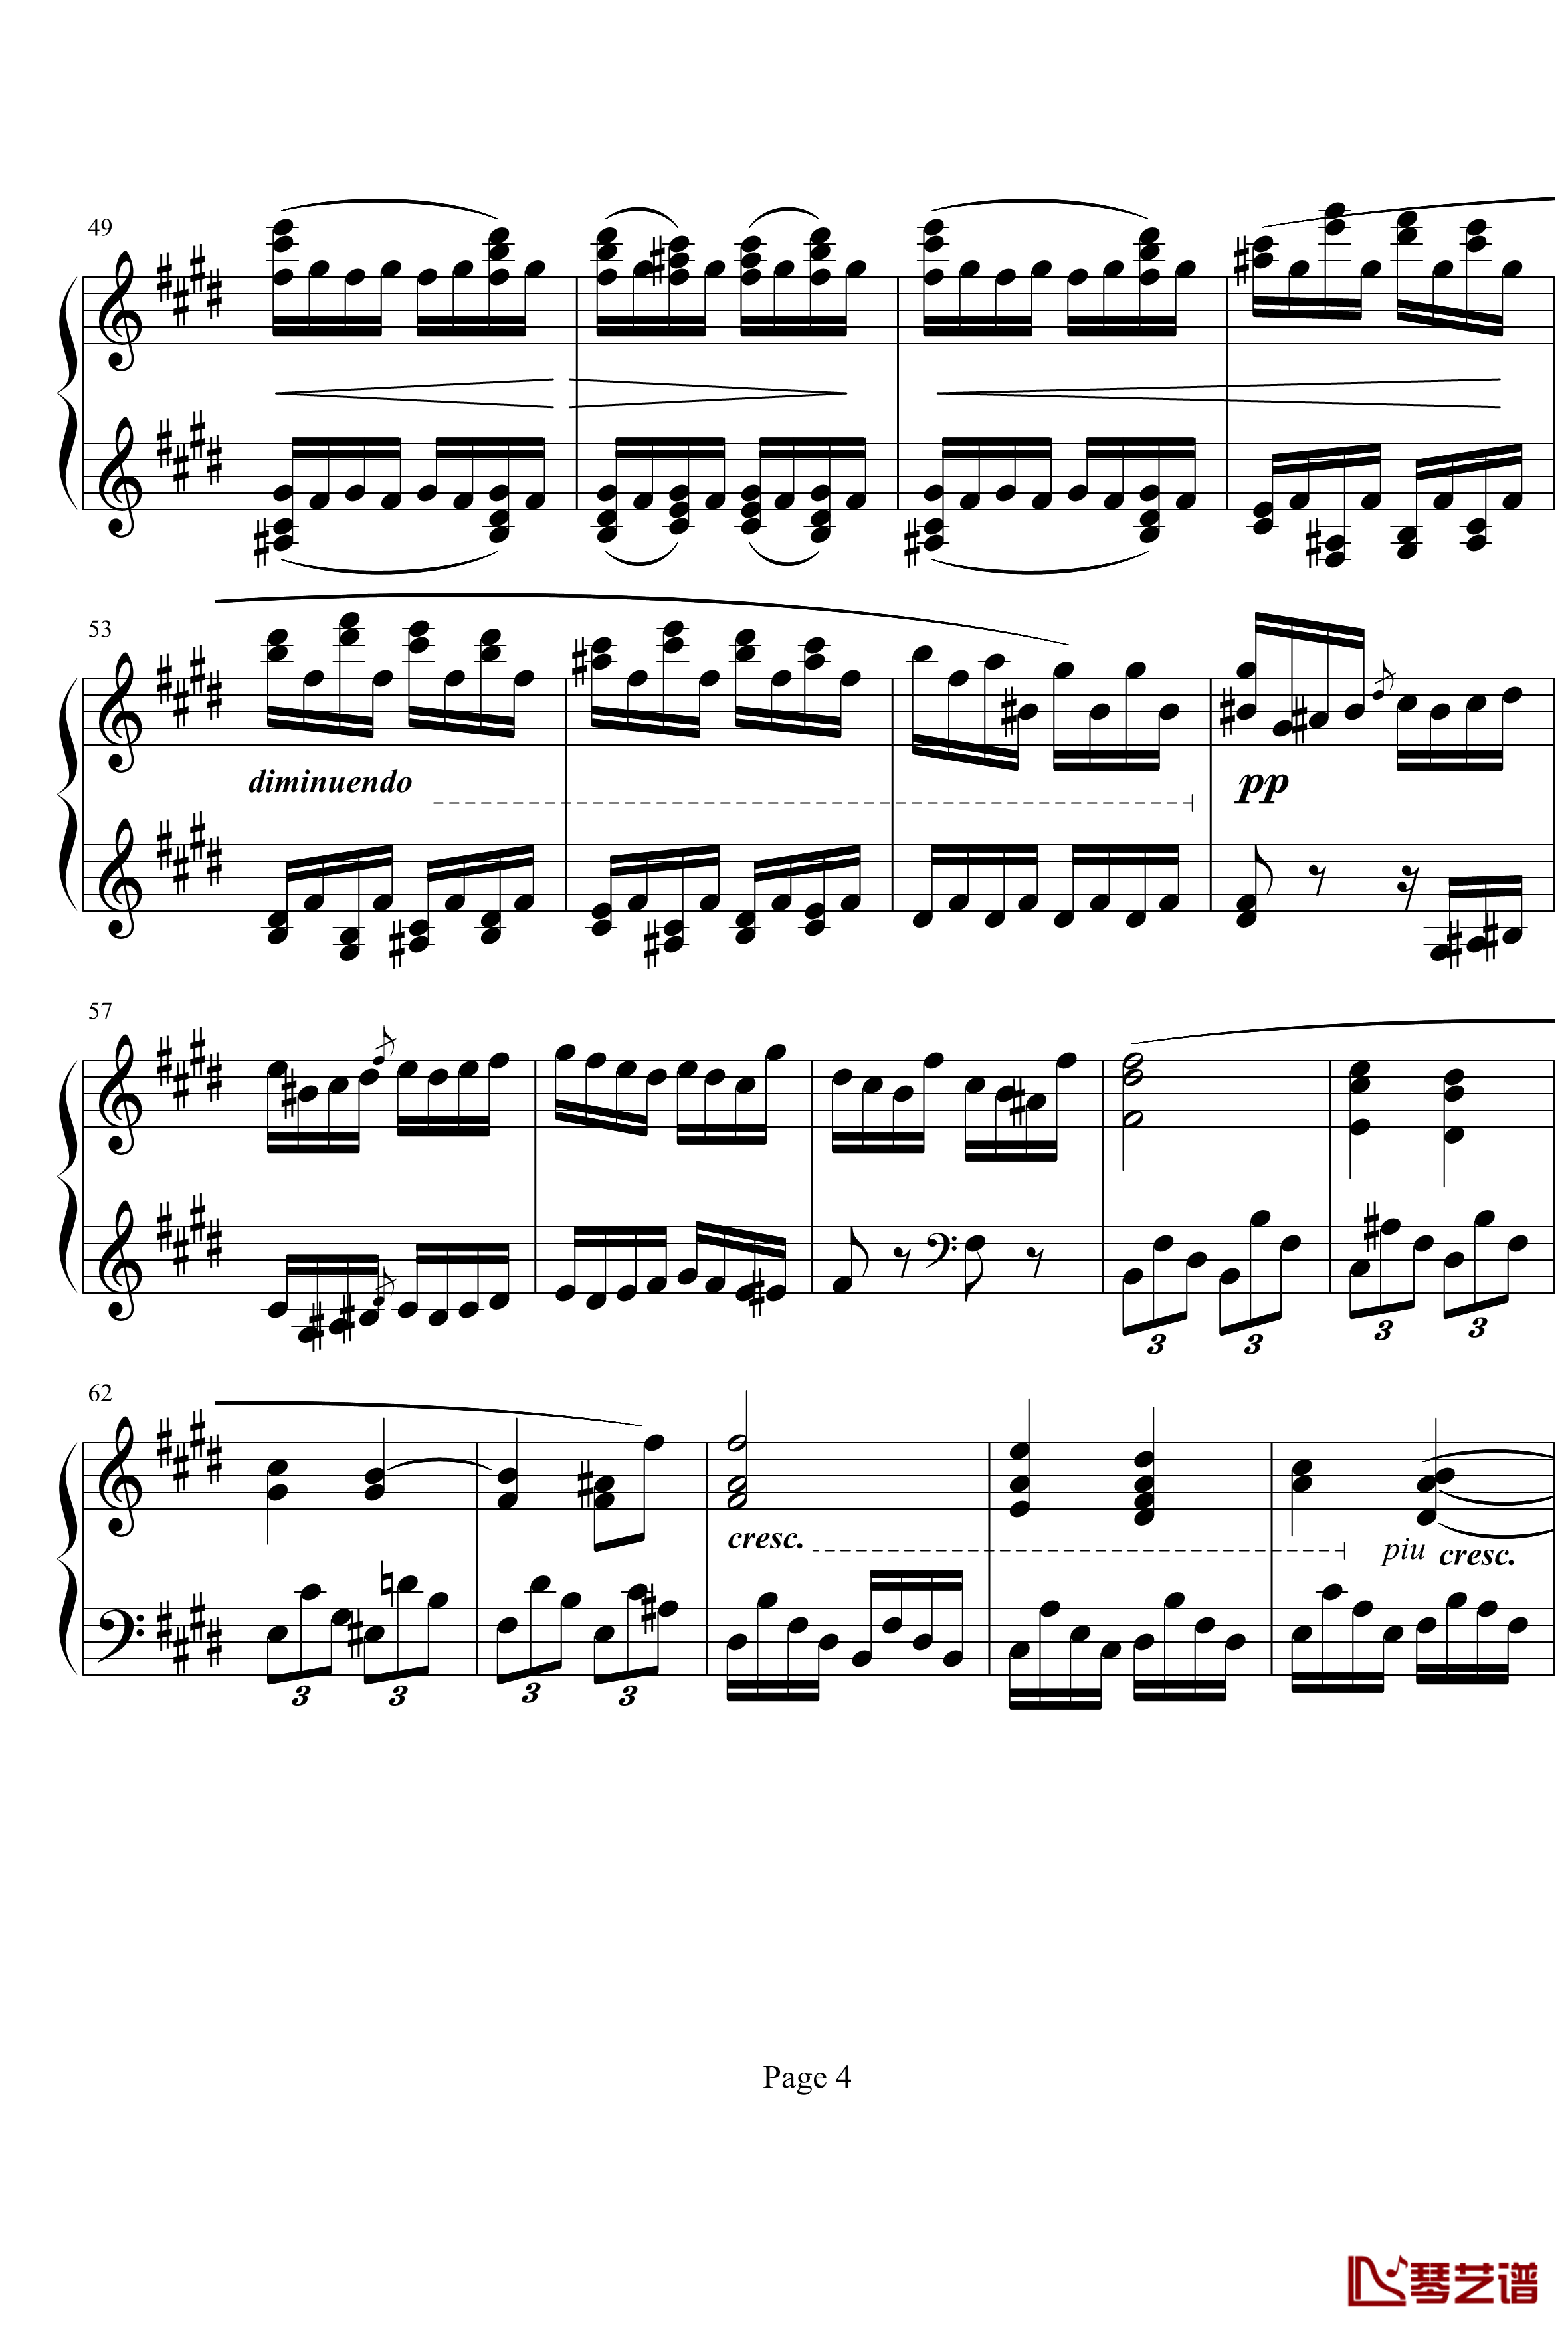 贝多芬第27钢琴奏鸣曲第二乐章钢琴谱-贝多芬